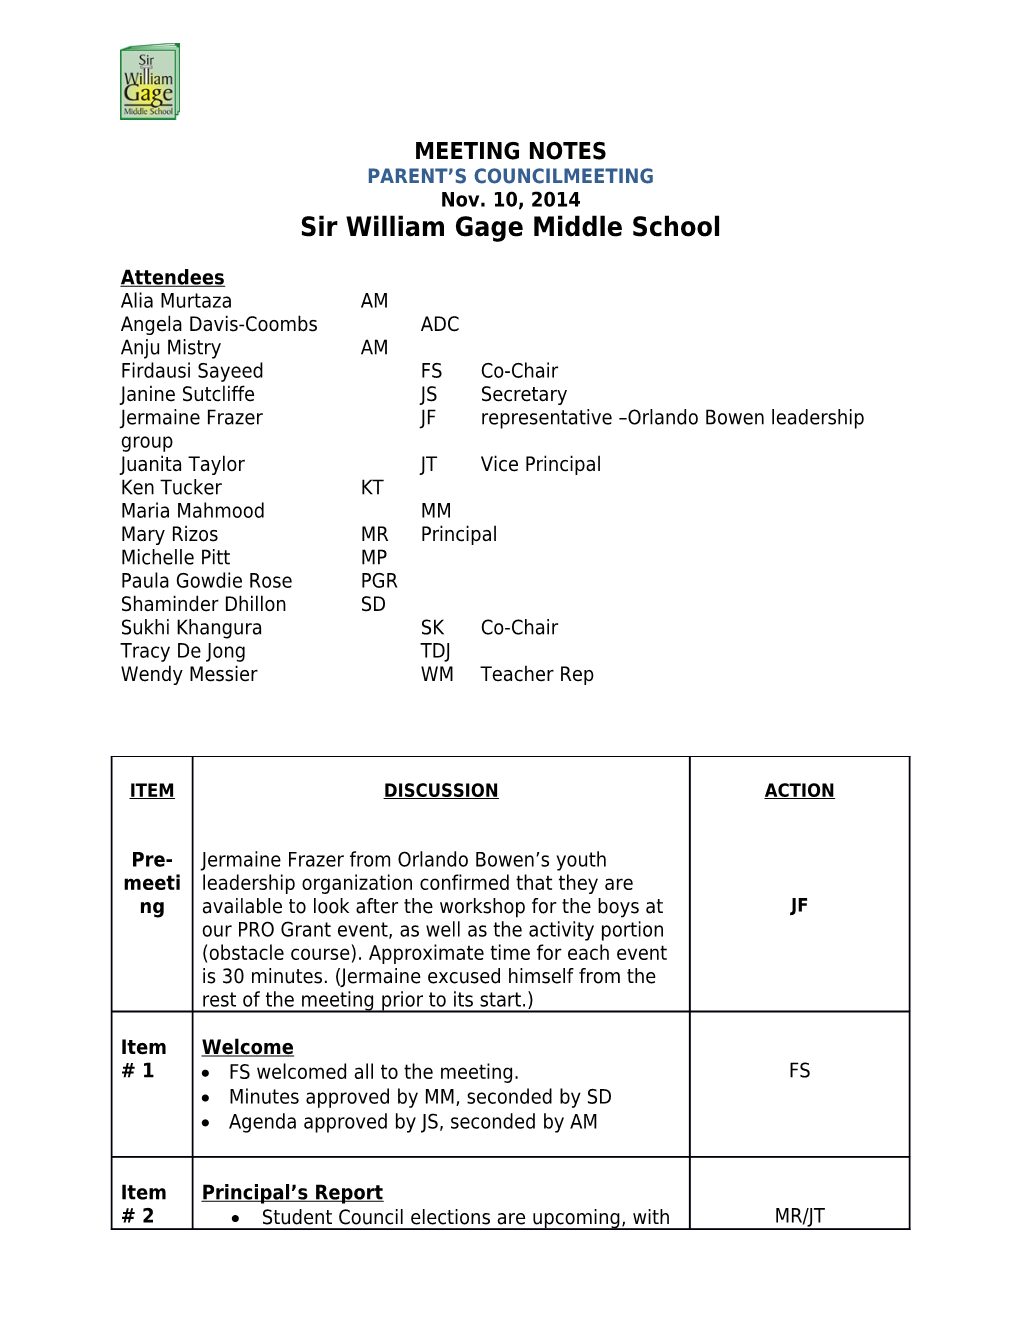 Sir William Gage Middle School